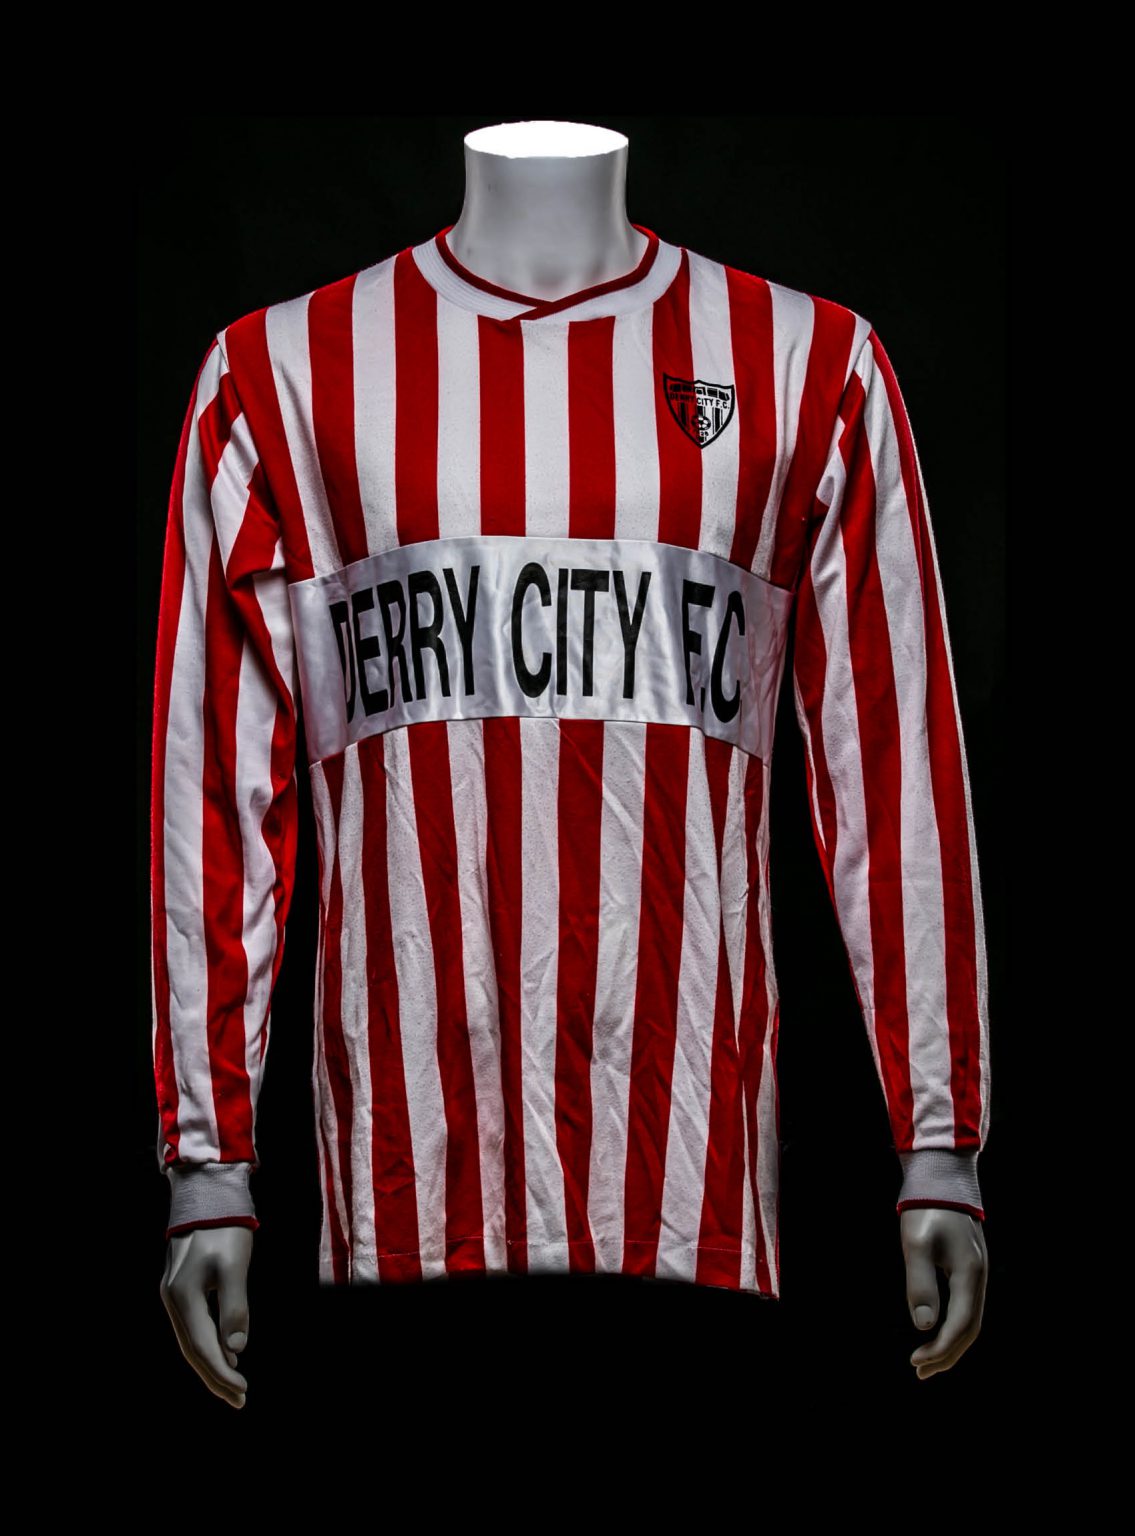 Derry City Fan Shirt 1990-1991